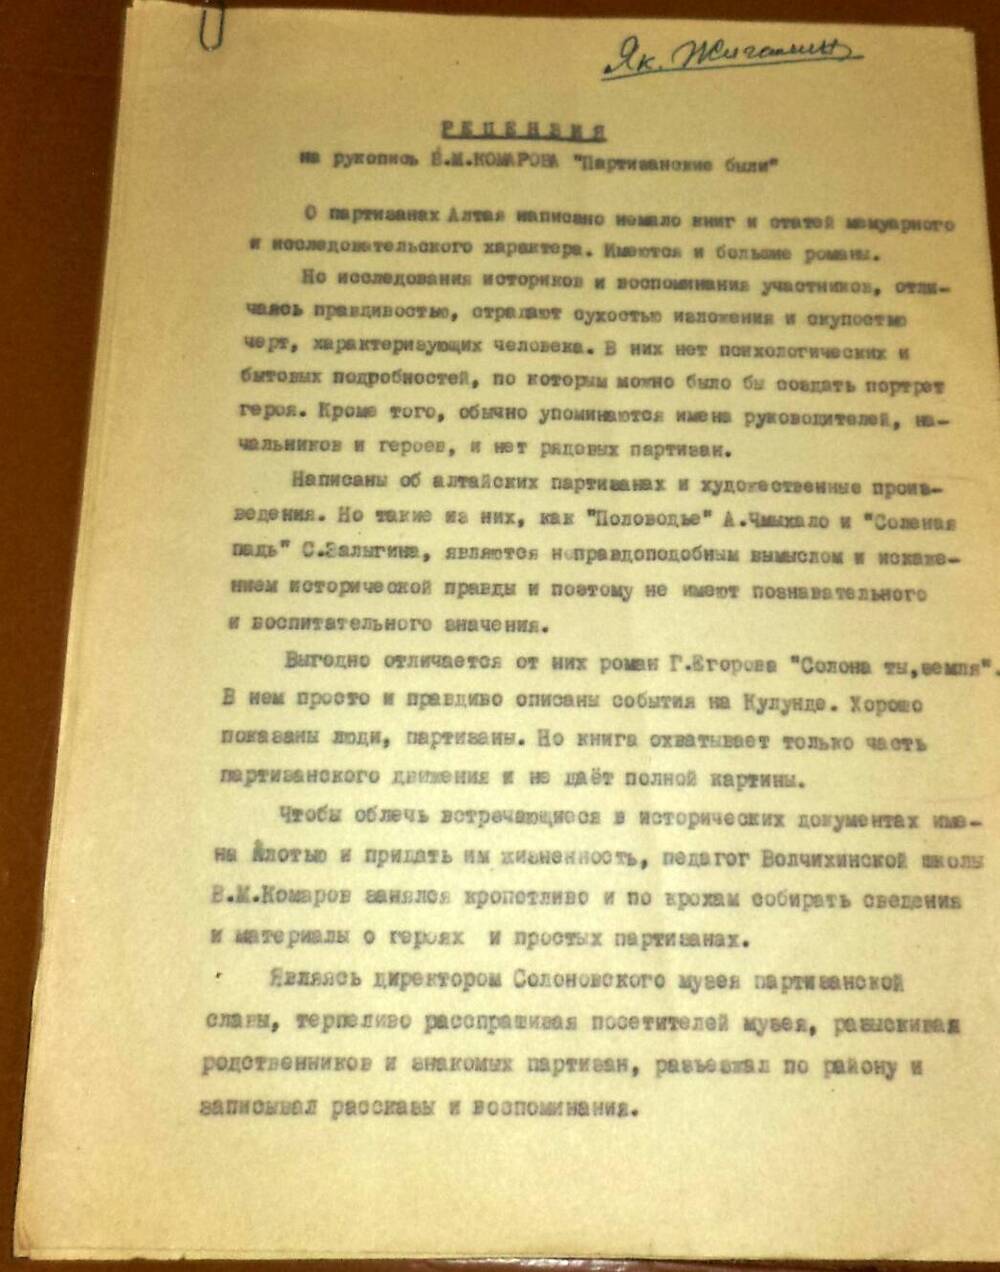 Рецензия Я.П.Жигалина на рукопись «Партизанские были» 1970г. на 6 страницах машинописного текста г. Ленинград.